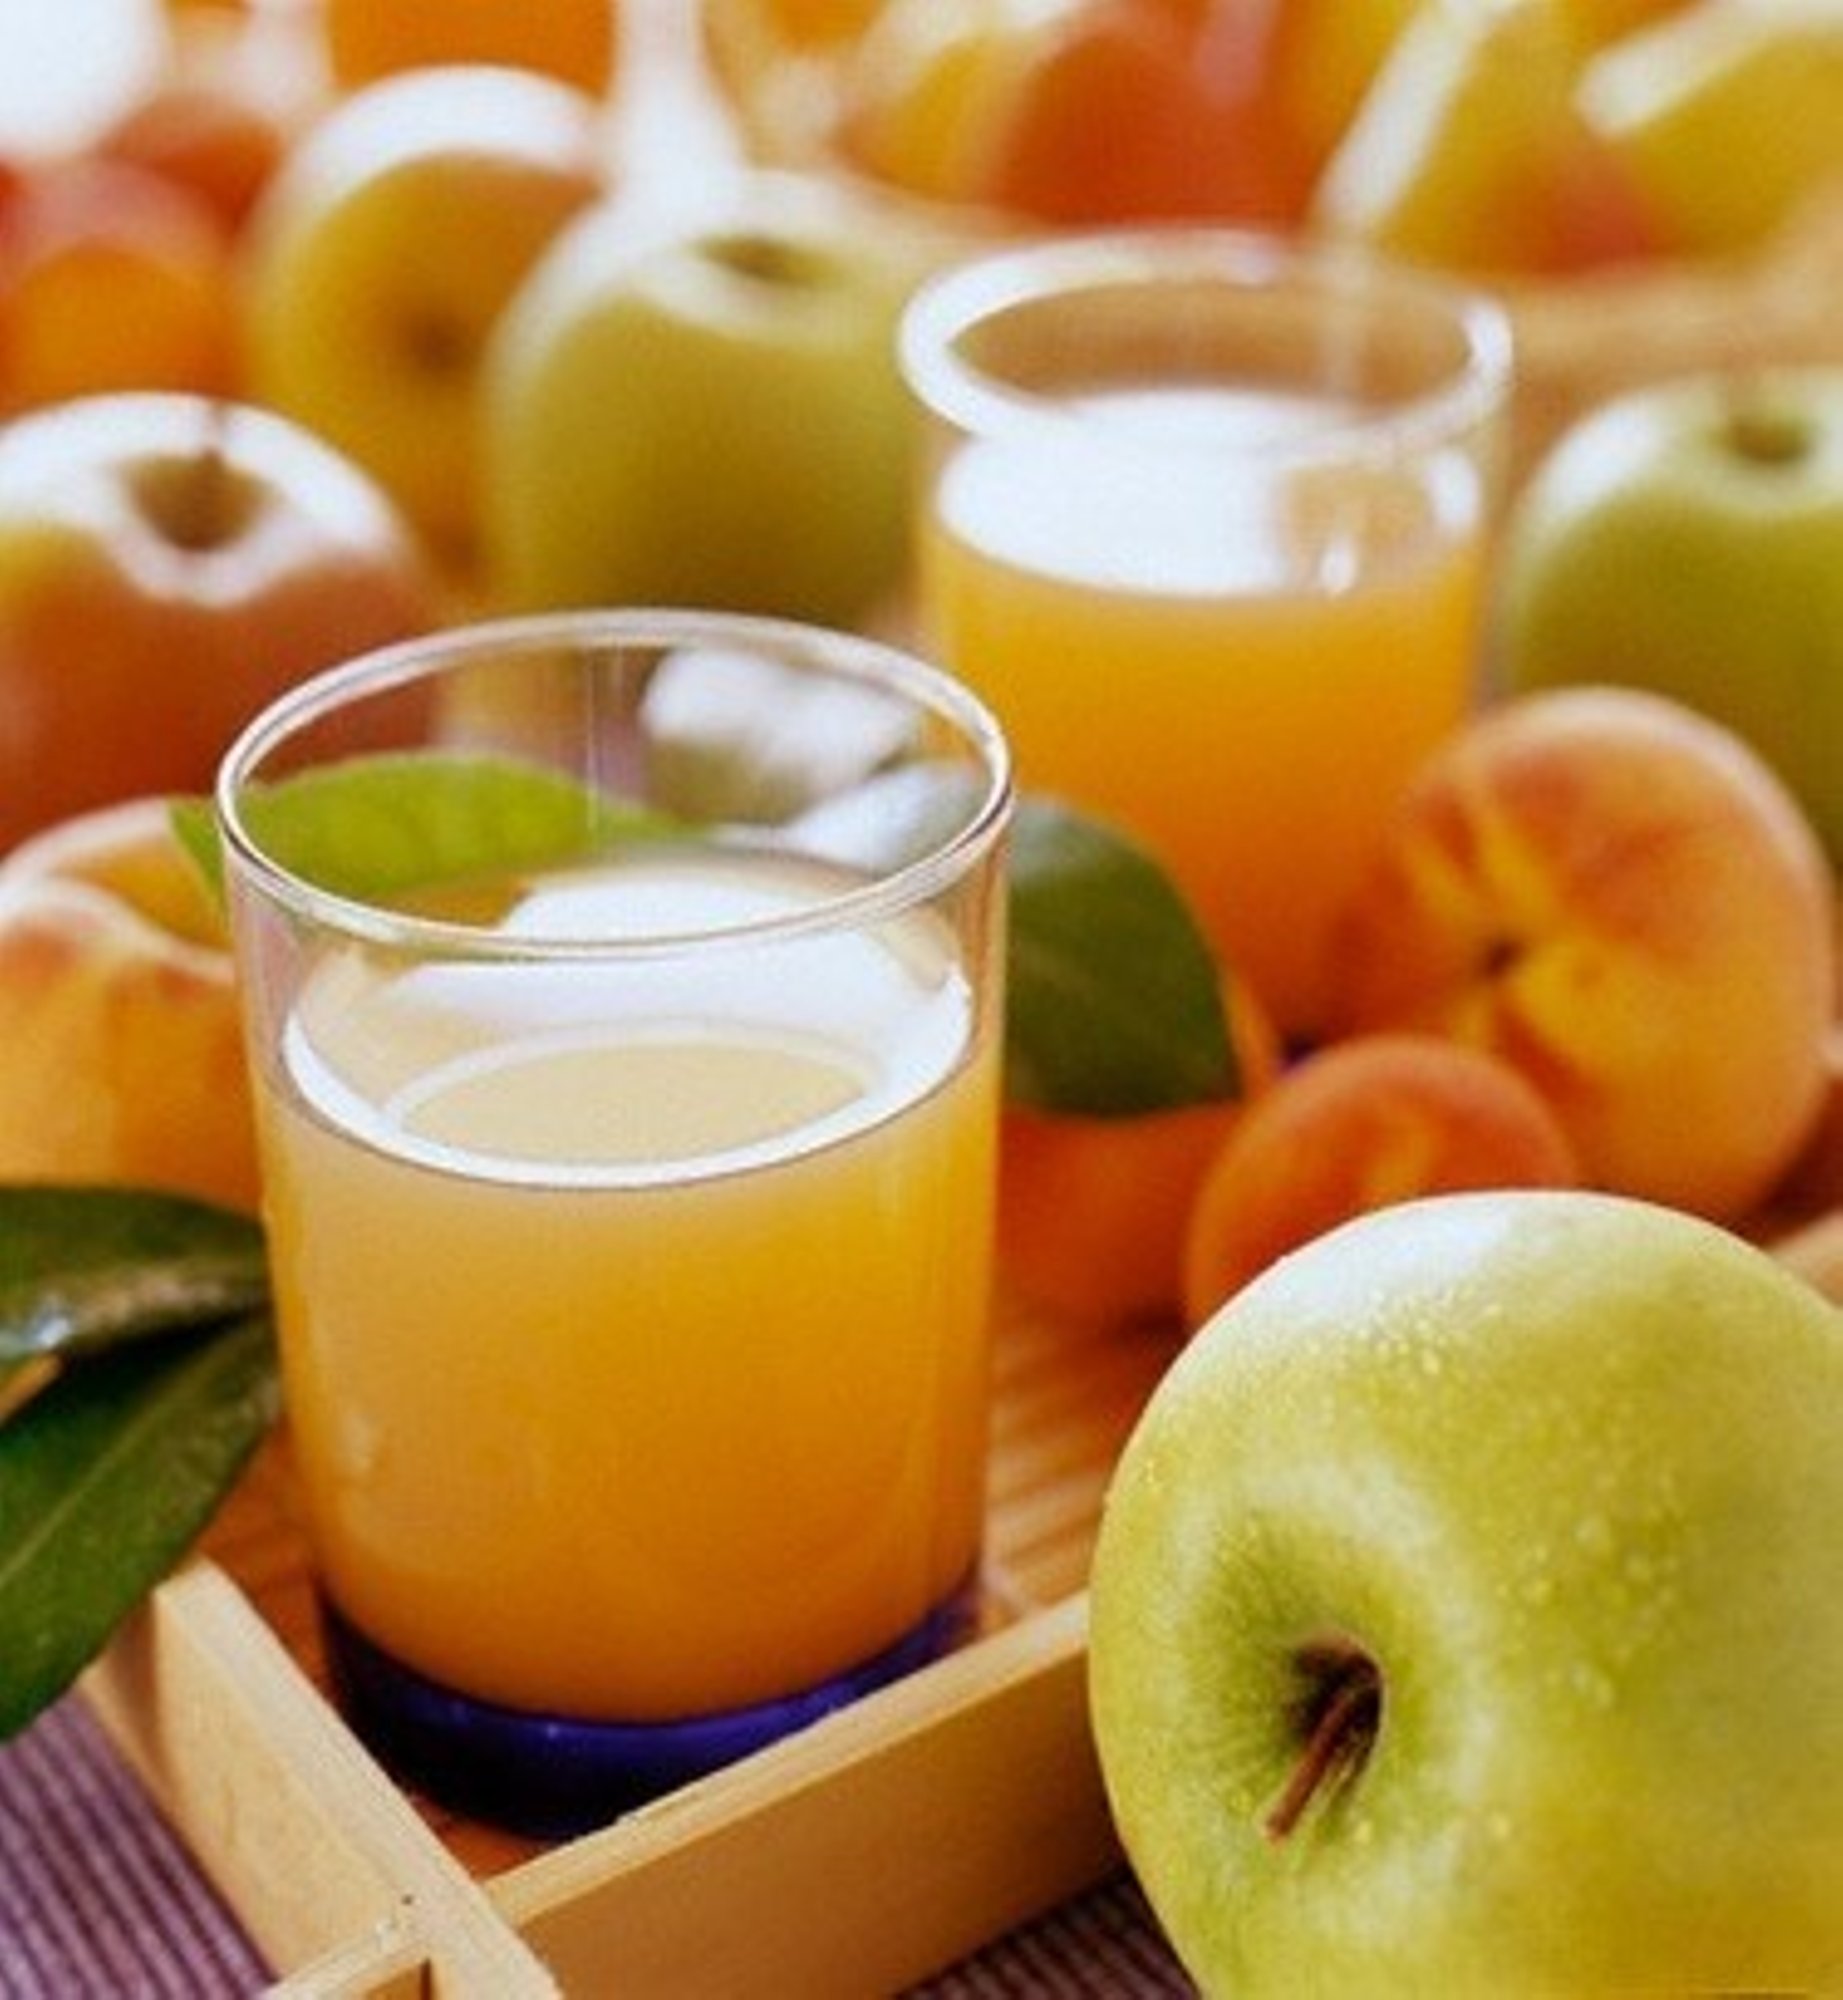 Яблочный сок. Сок фруктовый осветленный. Свежевыжатый яблочный сок. Натуральный яблочный сок. Сладкие фруктовые соки